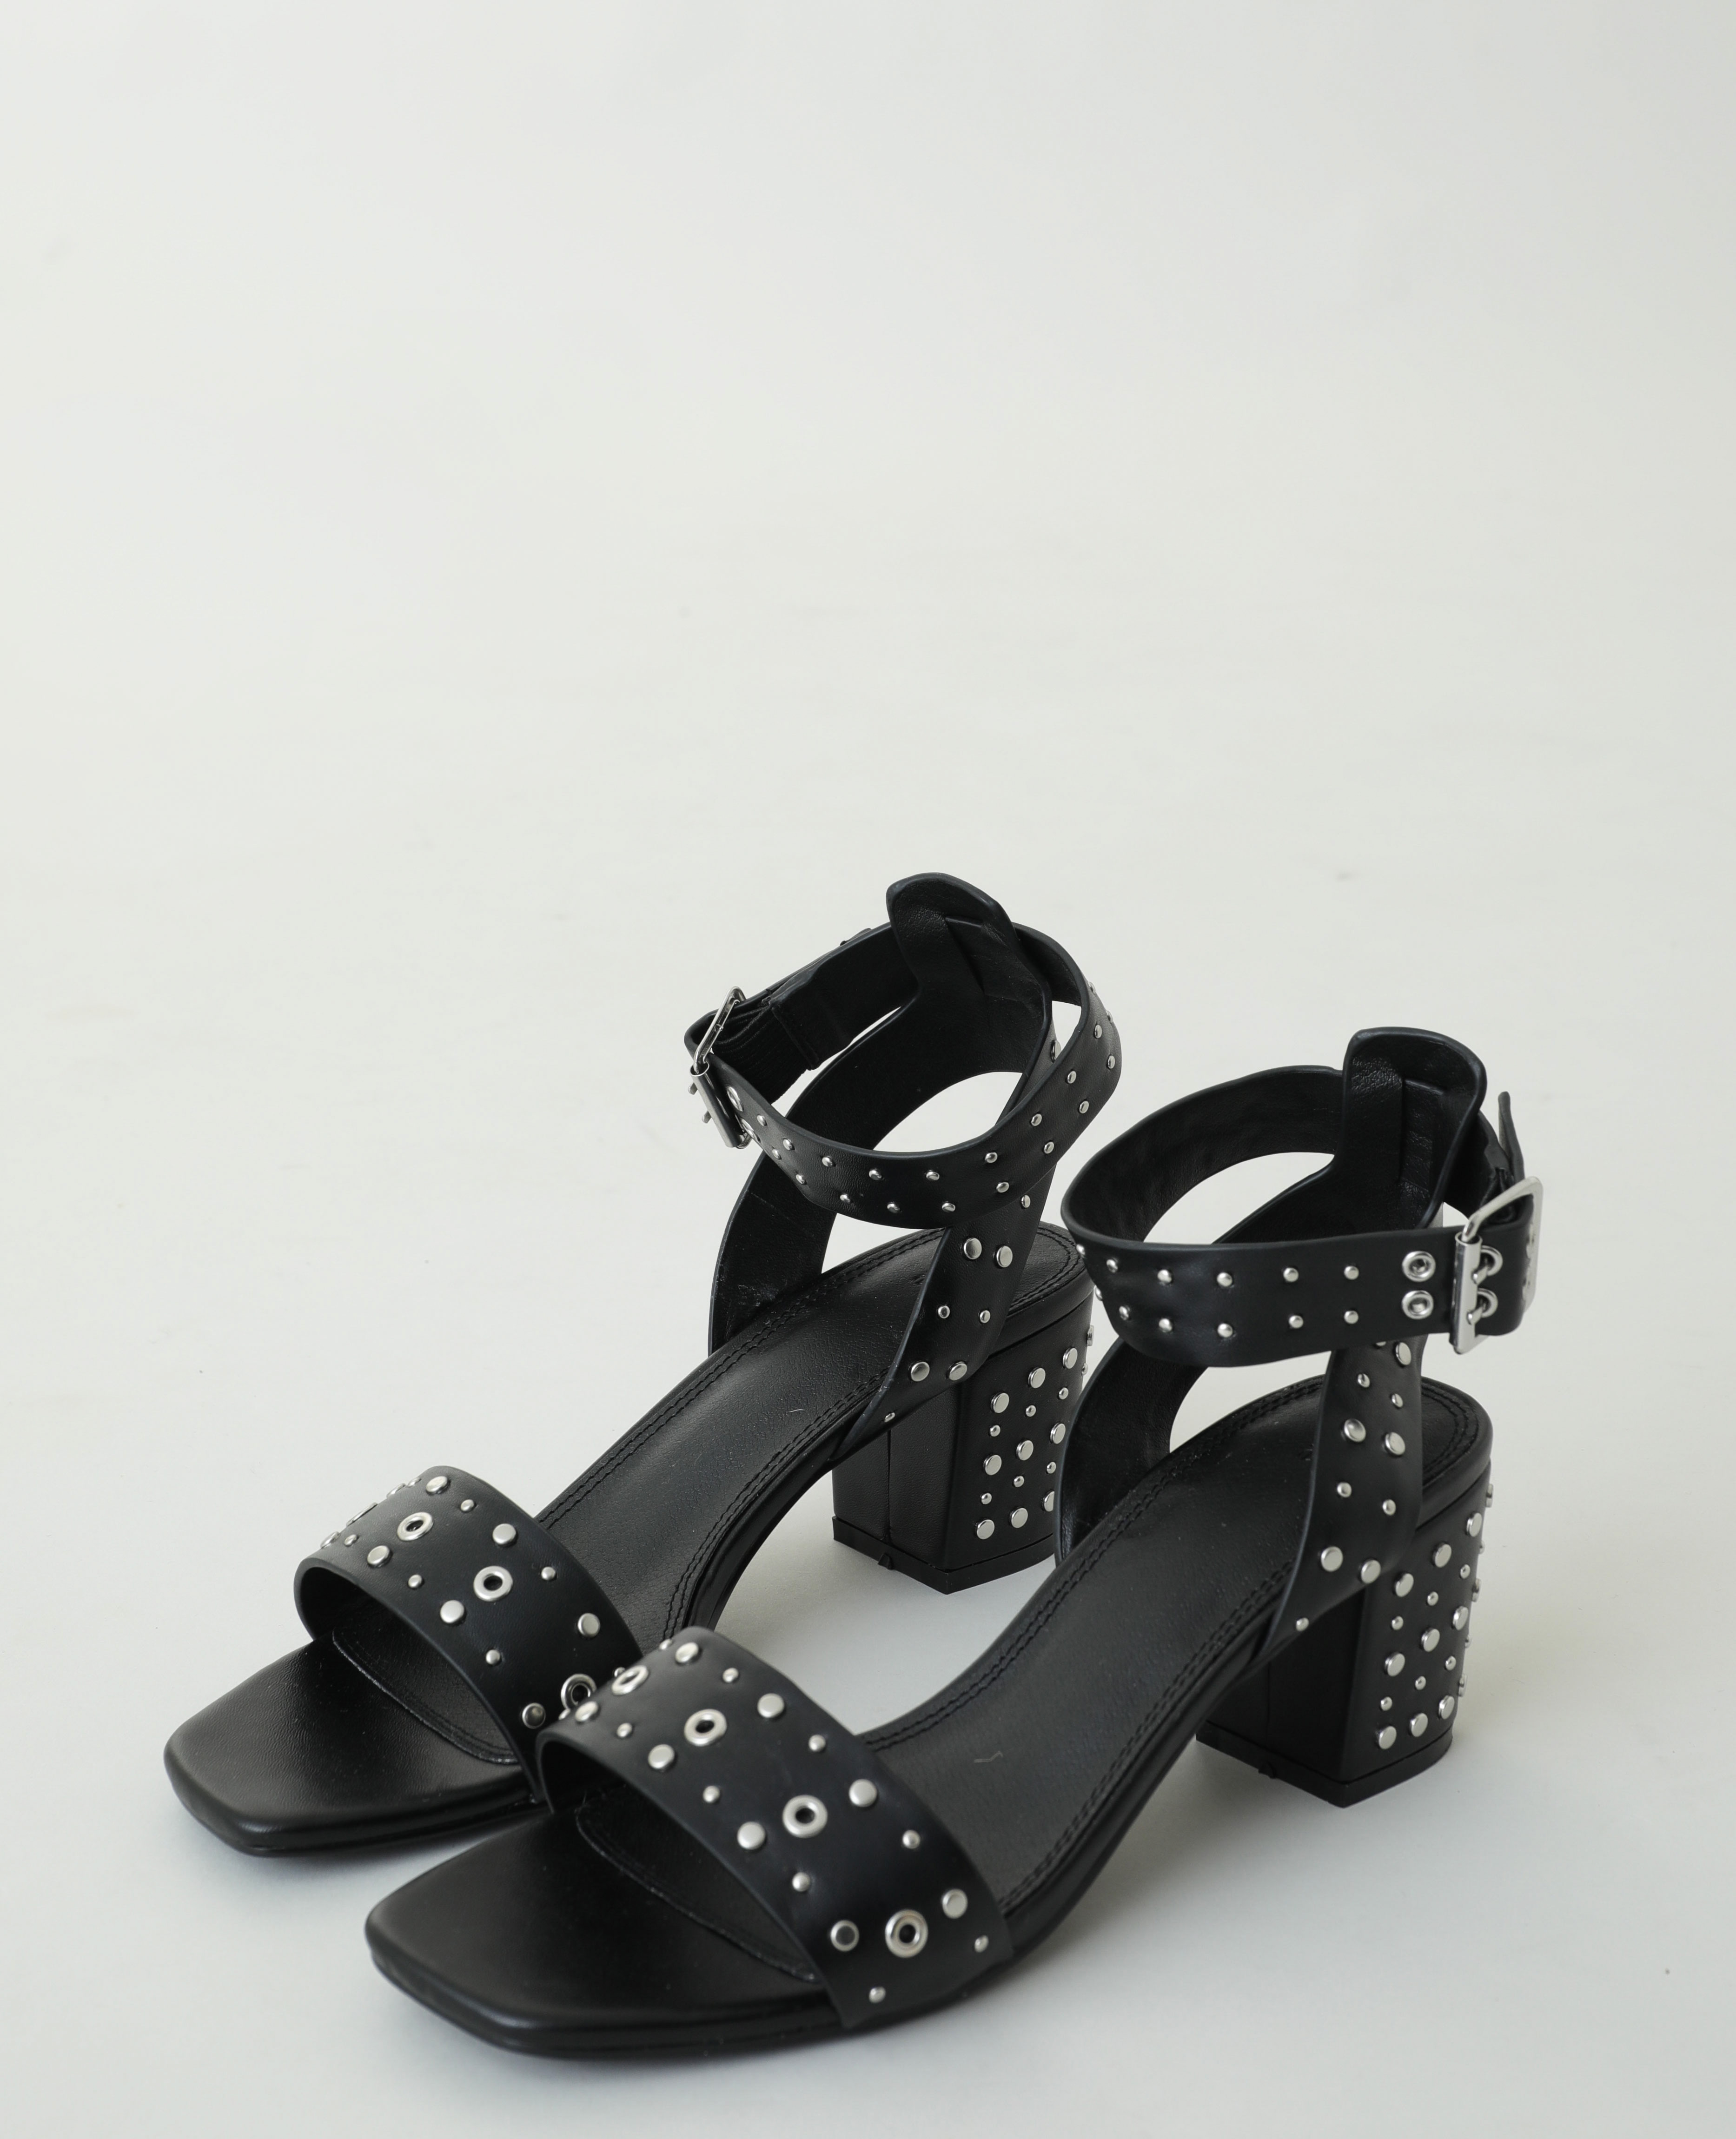 Sandales à talons cloutées noir - Pimkie